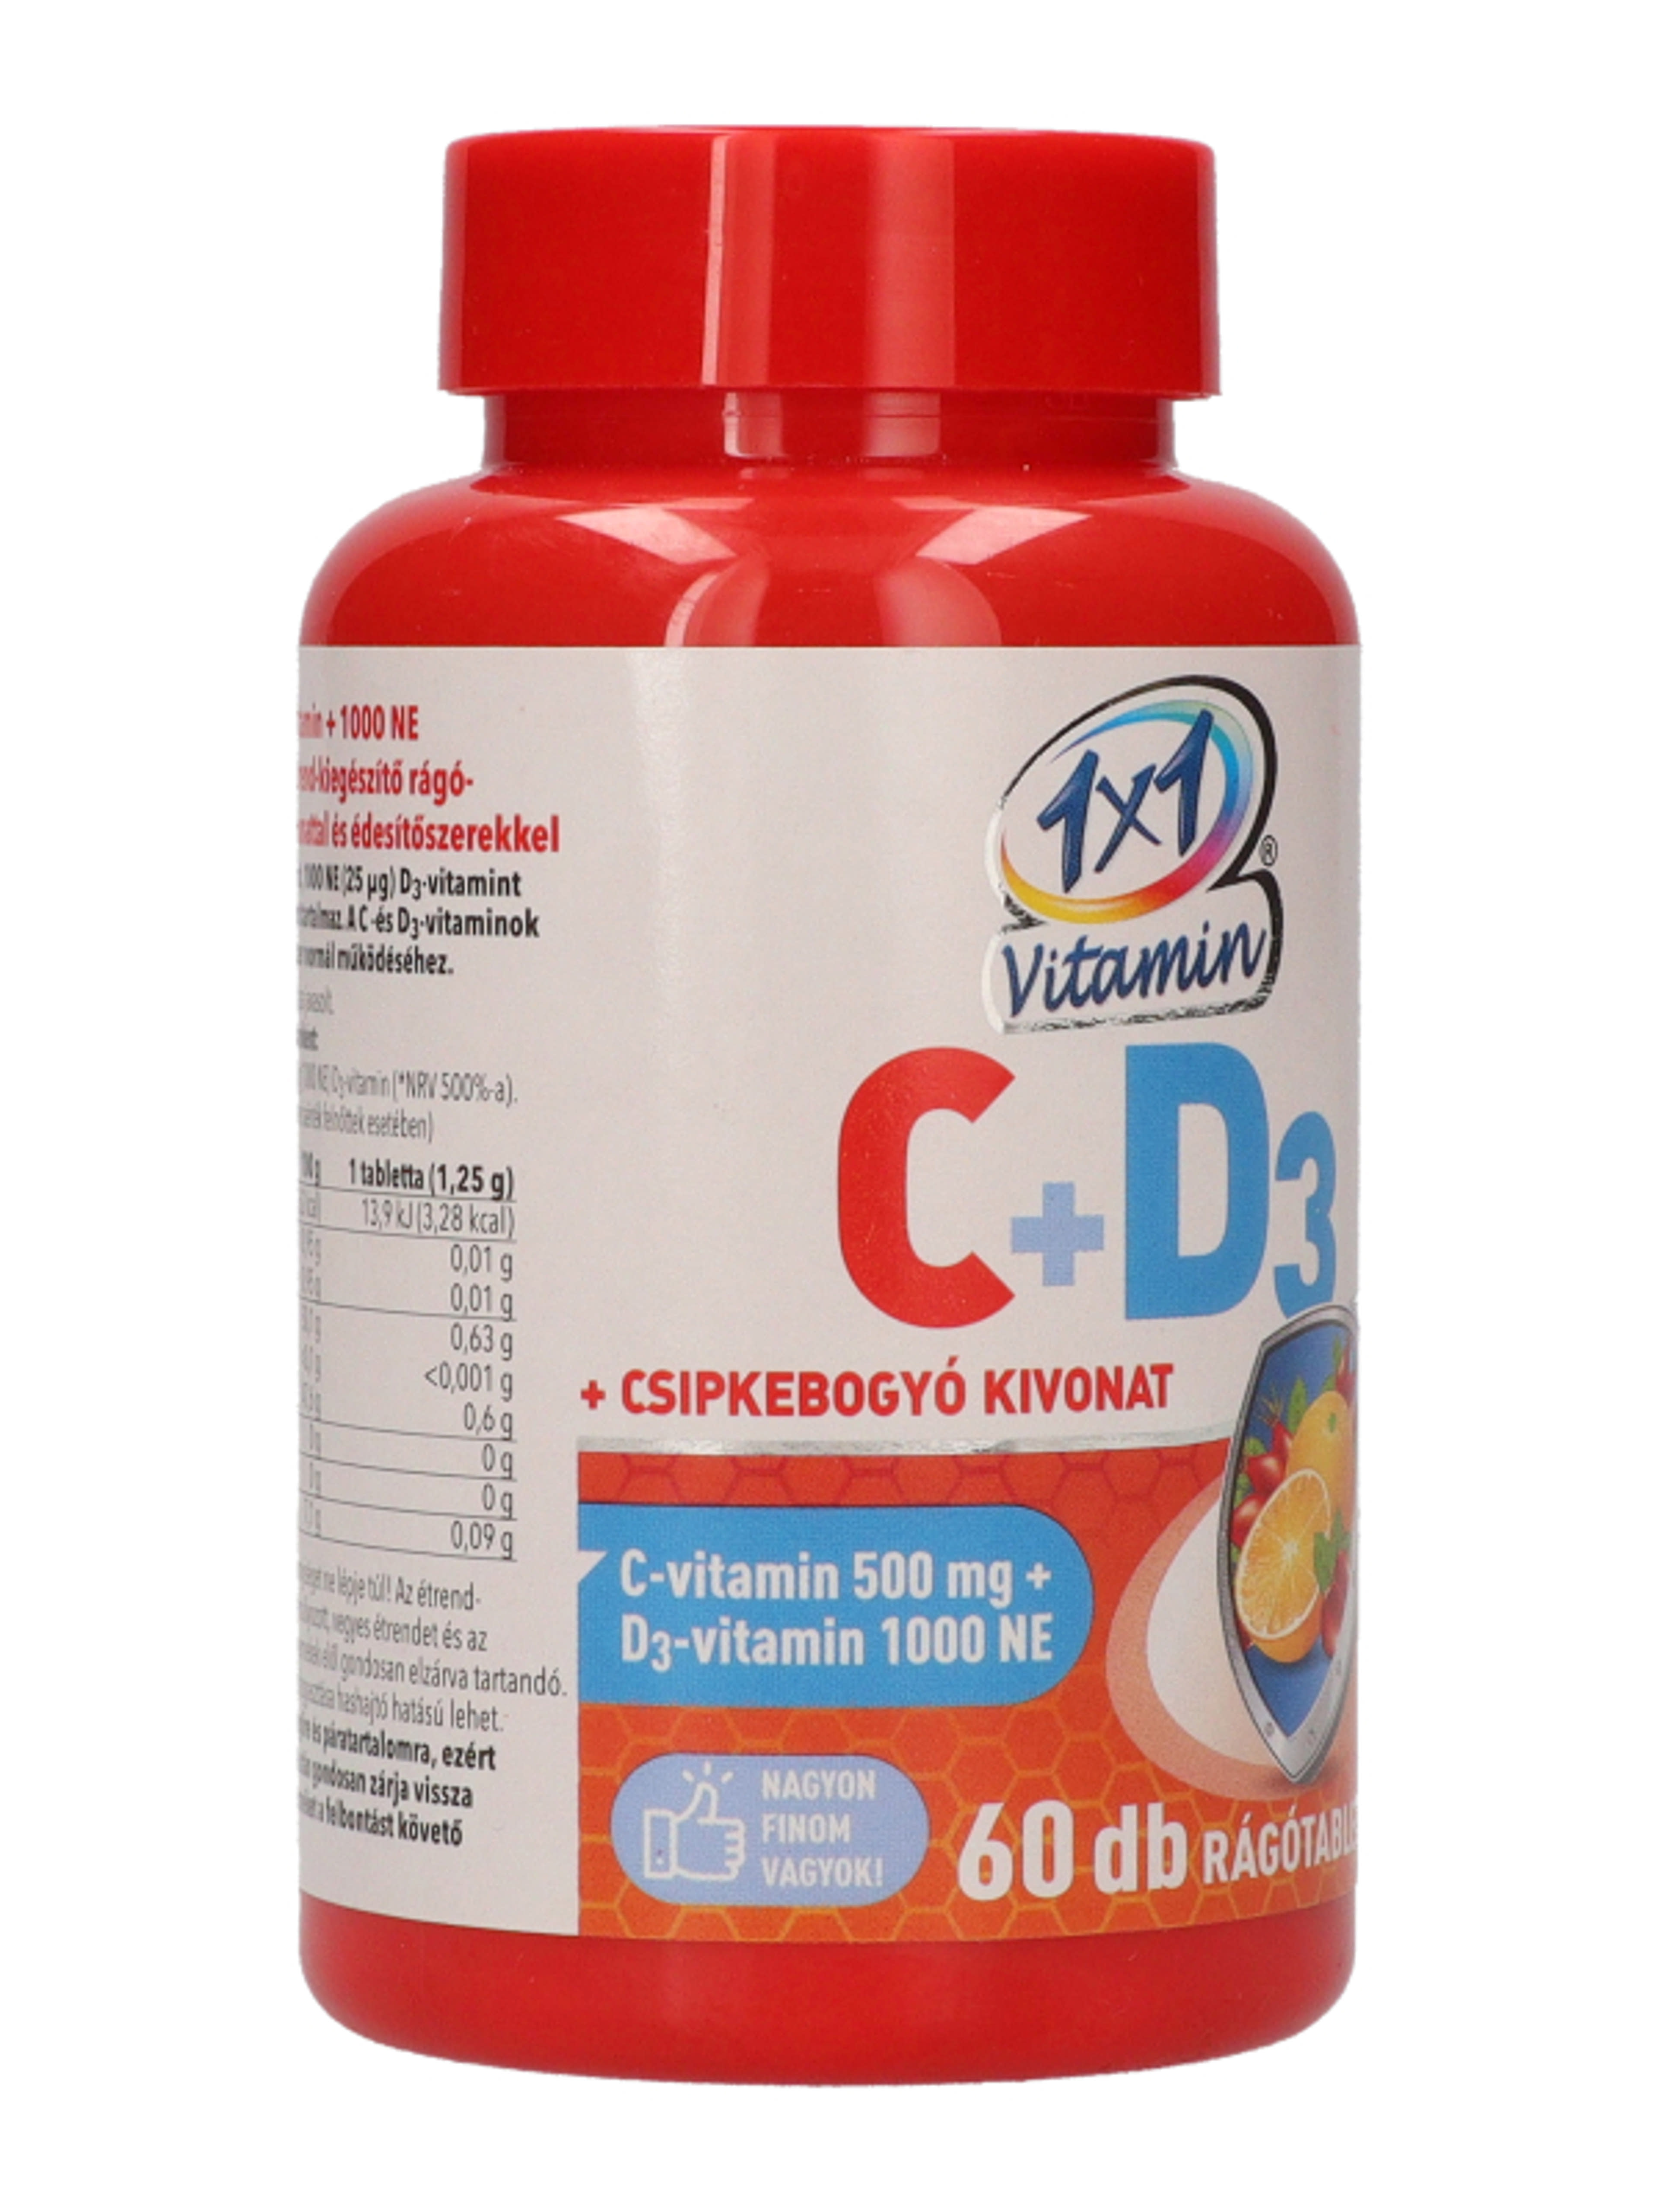 1x1 vitamin C-vitamin+D3+csipkebogyó rágótabletta - 60 db-4